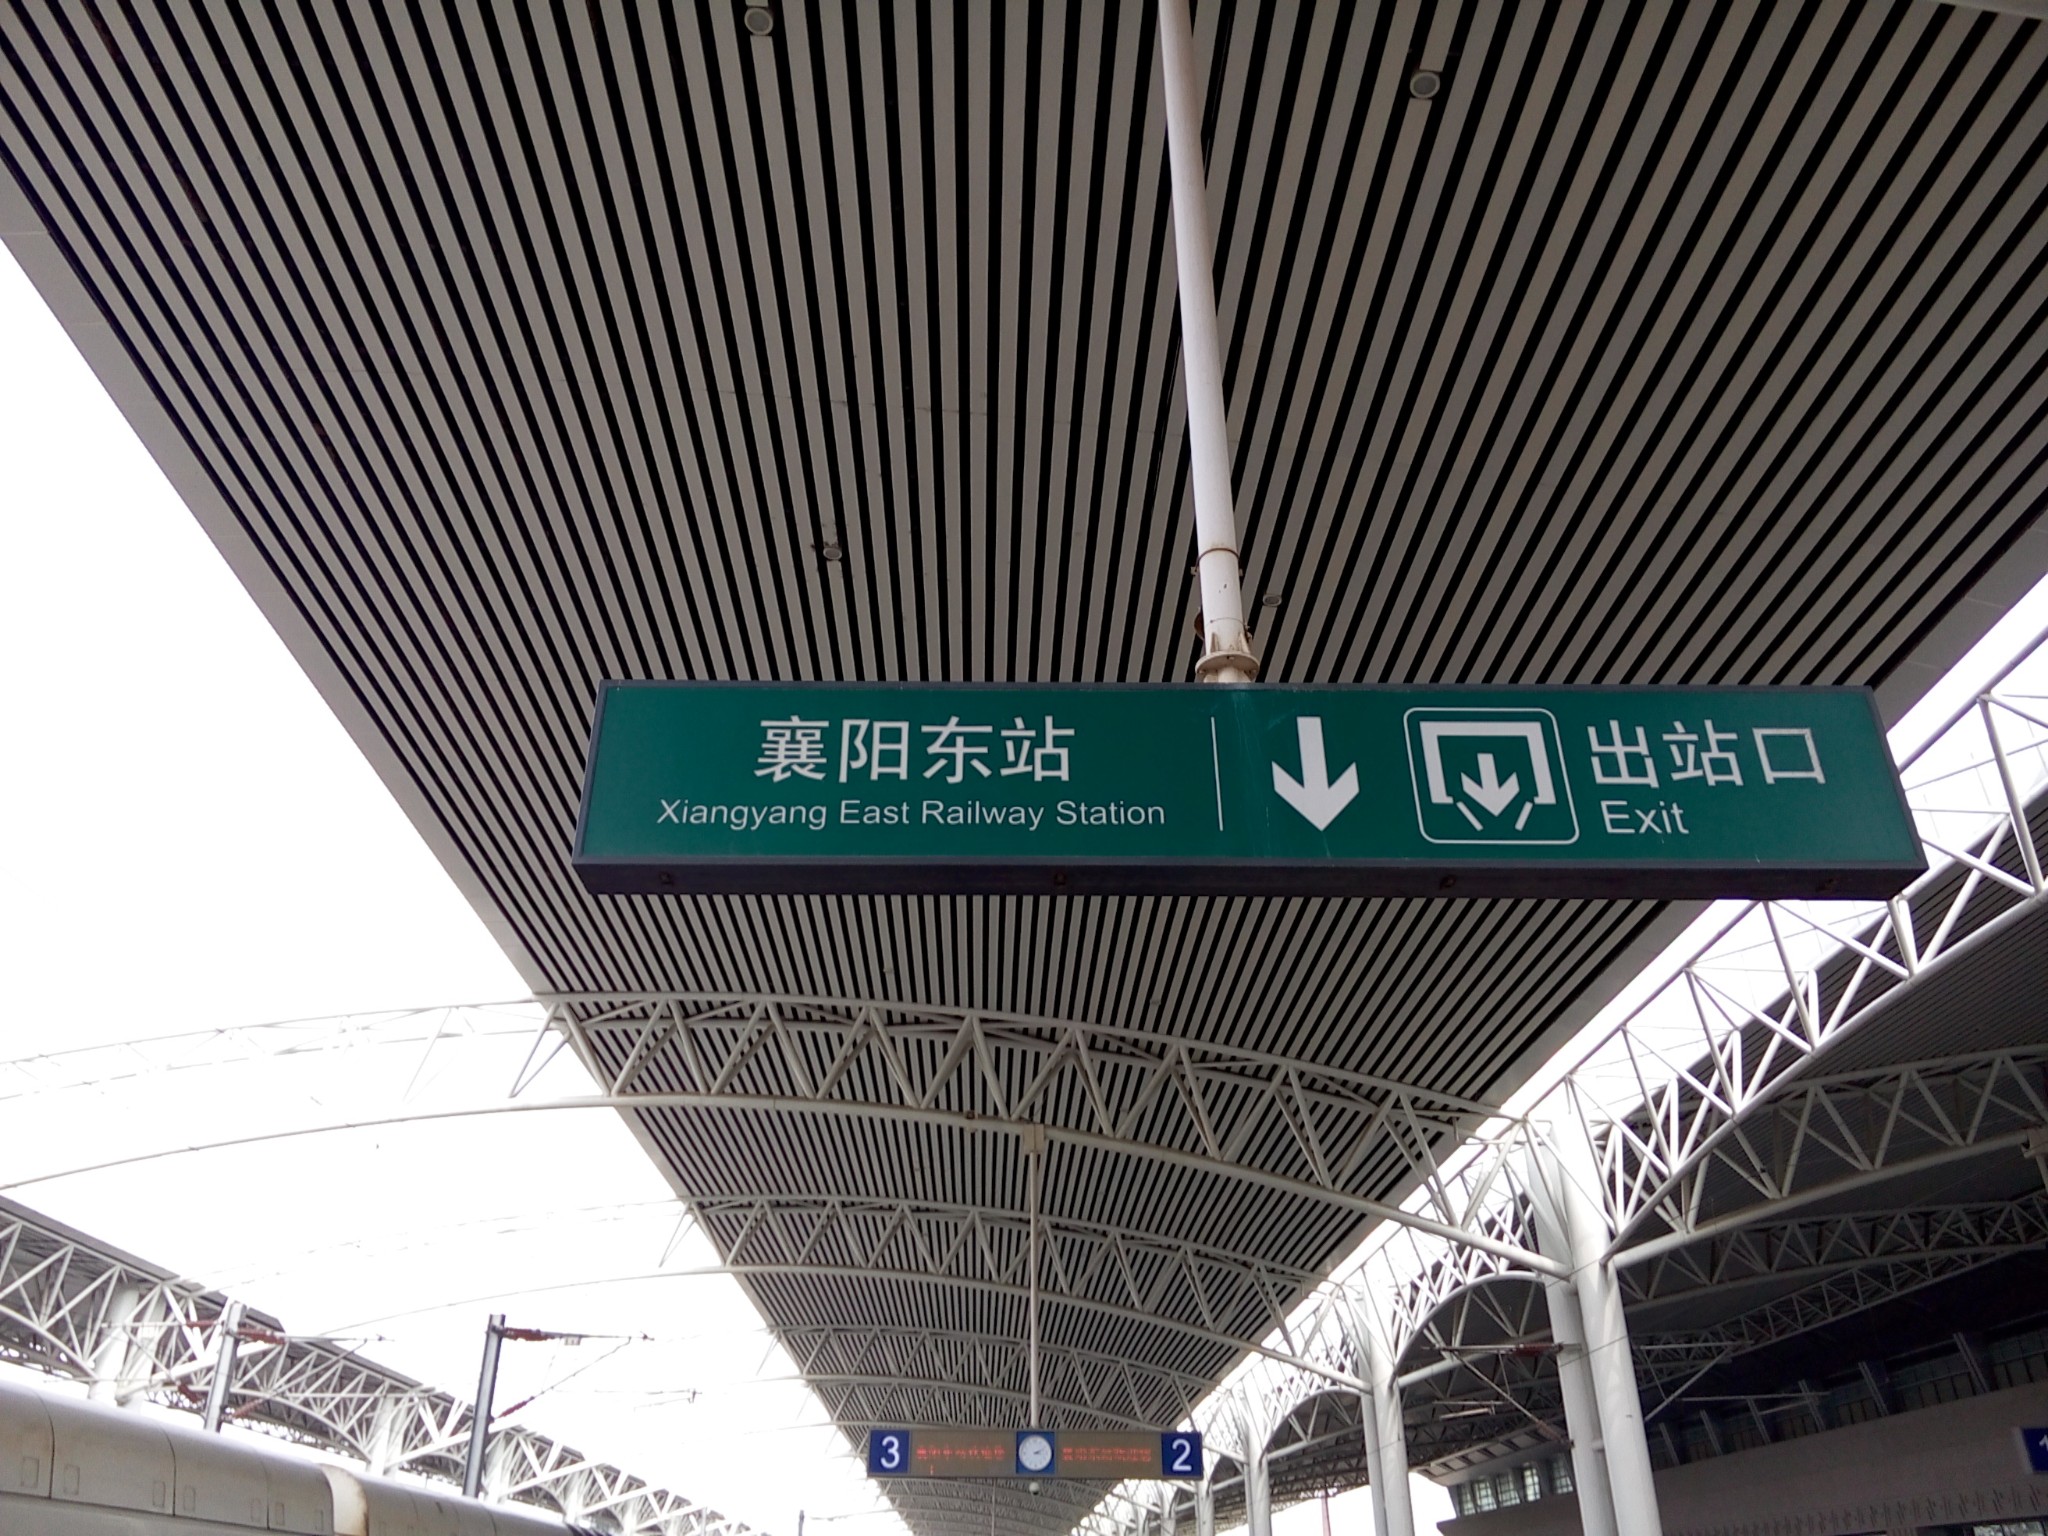 襄阳东站,虽然比较偏僻,但公交线路方便.